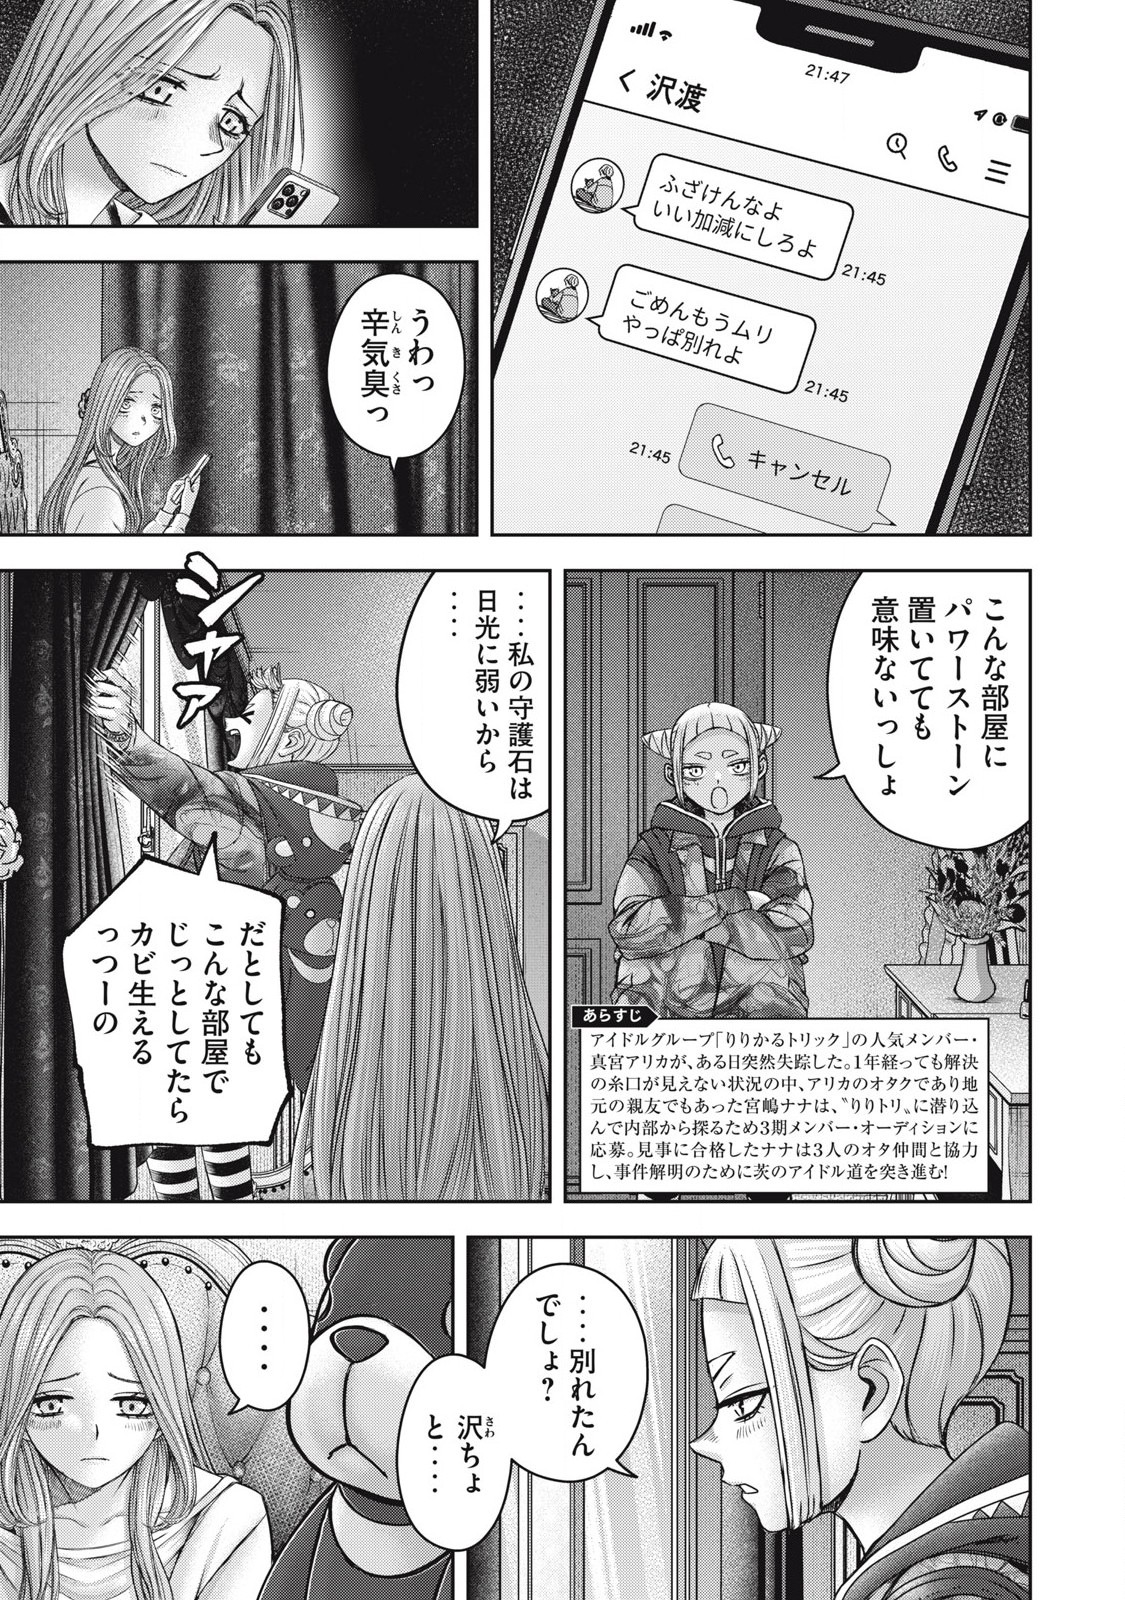 Watashi no Arika - Chapter 57 - Page 3